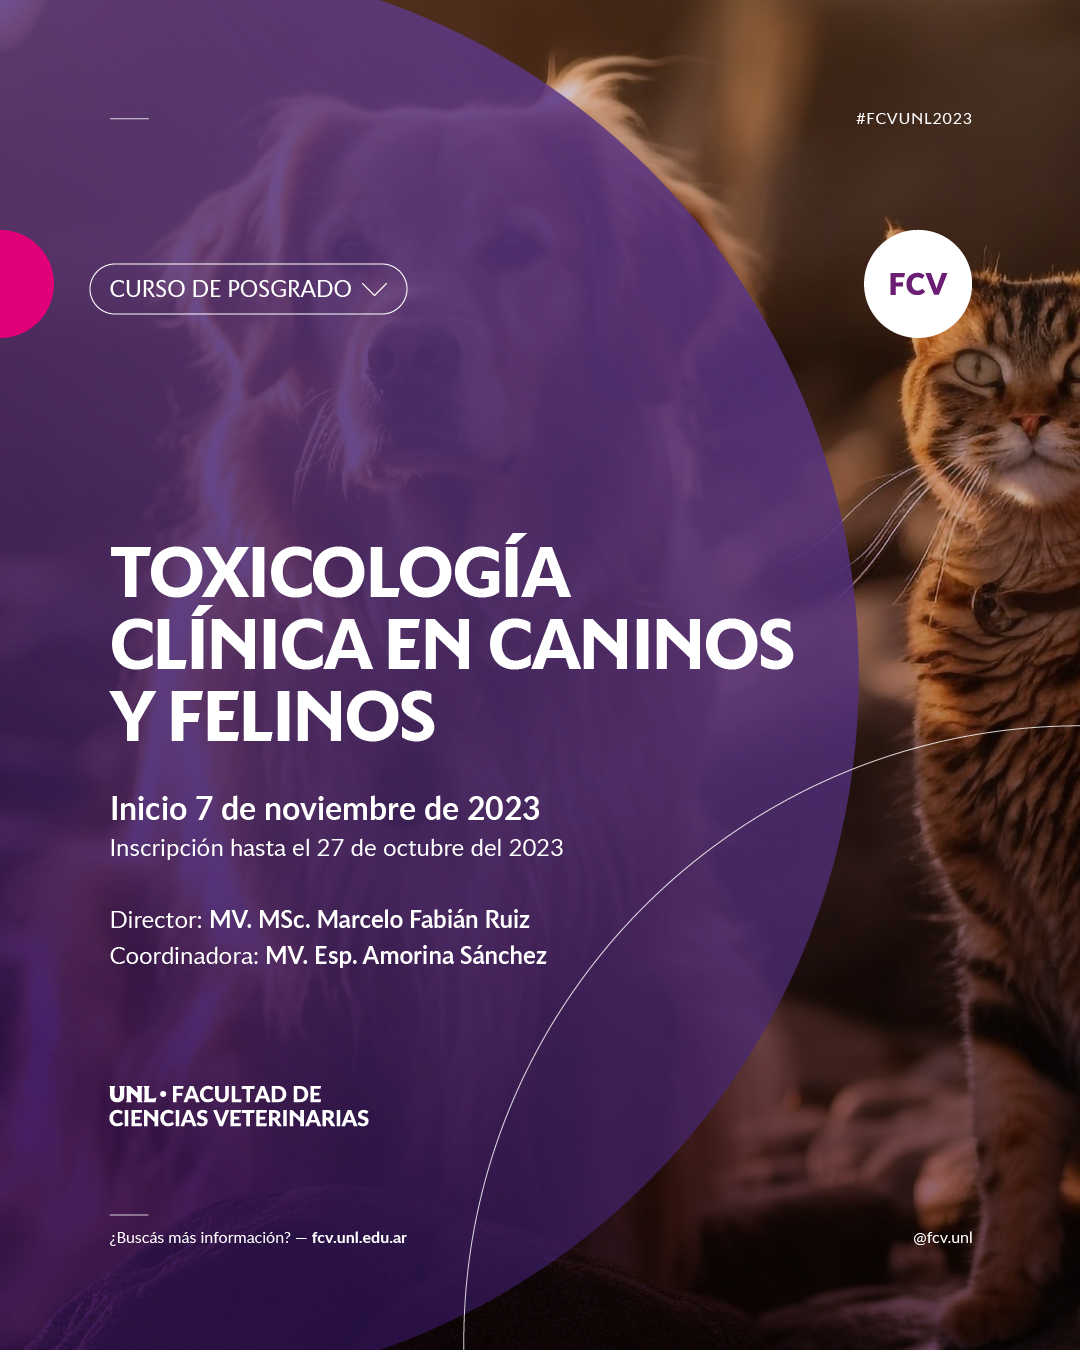 Especialización en Toxicología Clínica – Postgrado en Toxicología (online)